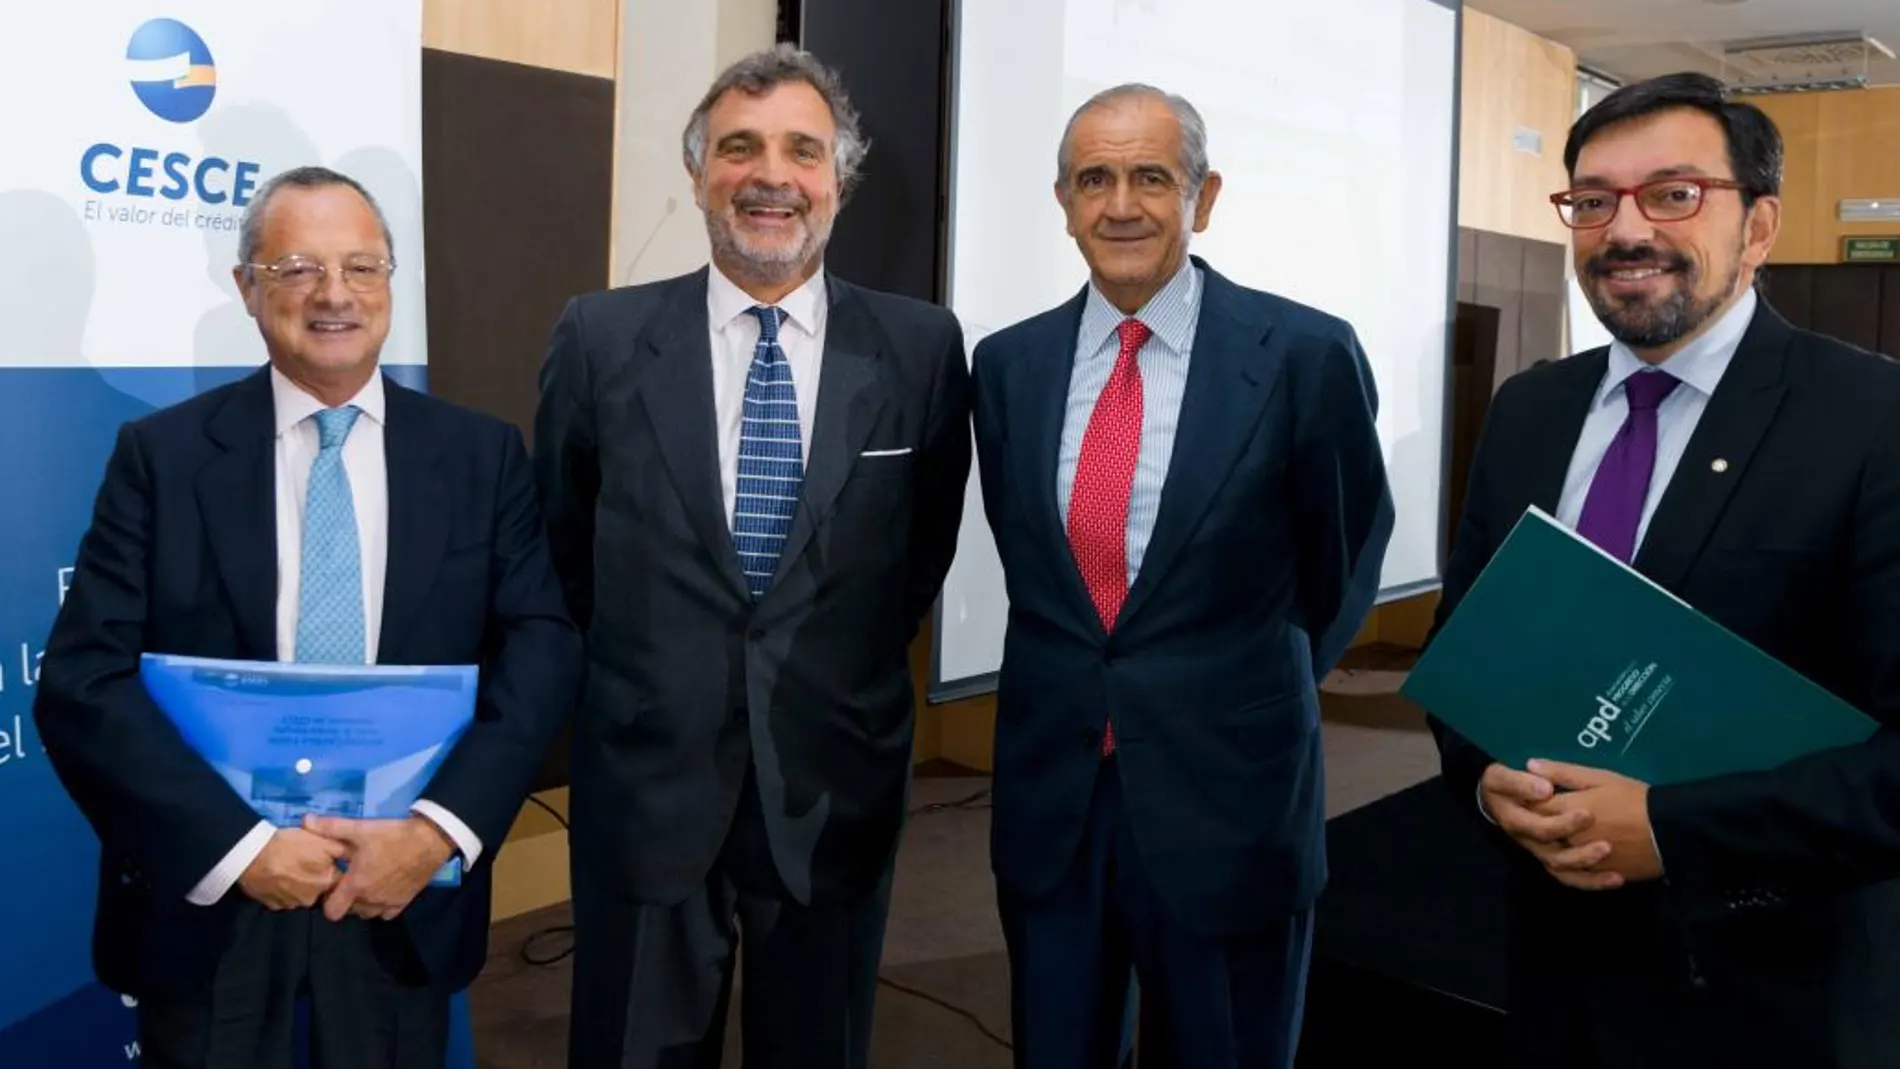 De izquierda a derecha Enrique Asenjoy y Rengifo, de Cesce; y José Ignacio Nicolás-Correa y Prundencio Herrero, de APD